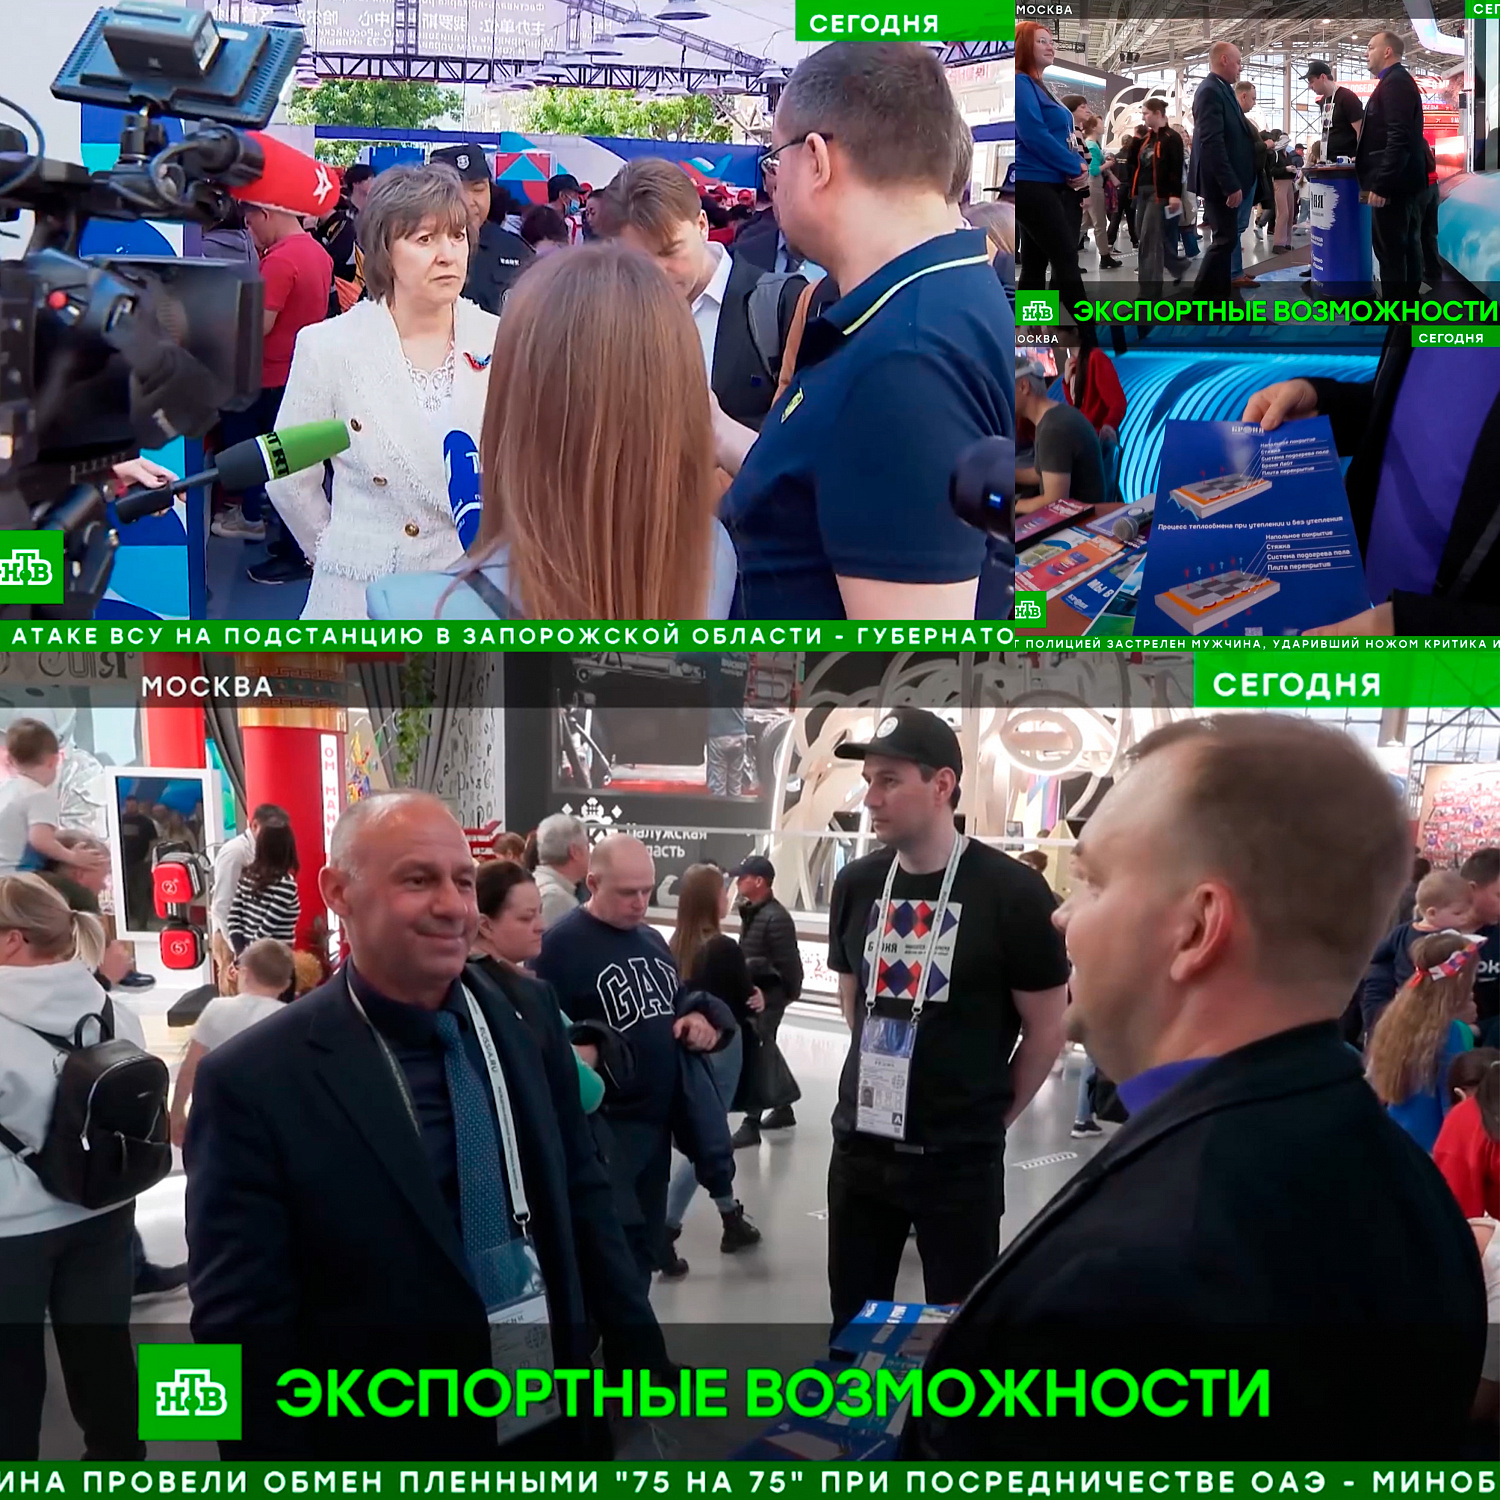 Сделано в России: отечественная "Броня" пользуется повышенным спросом за рубежом (телевизионный сюжет ТВ компании НТВ)